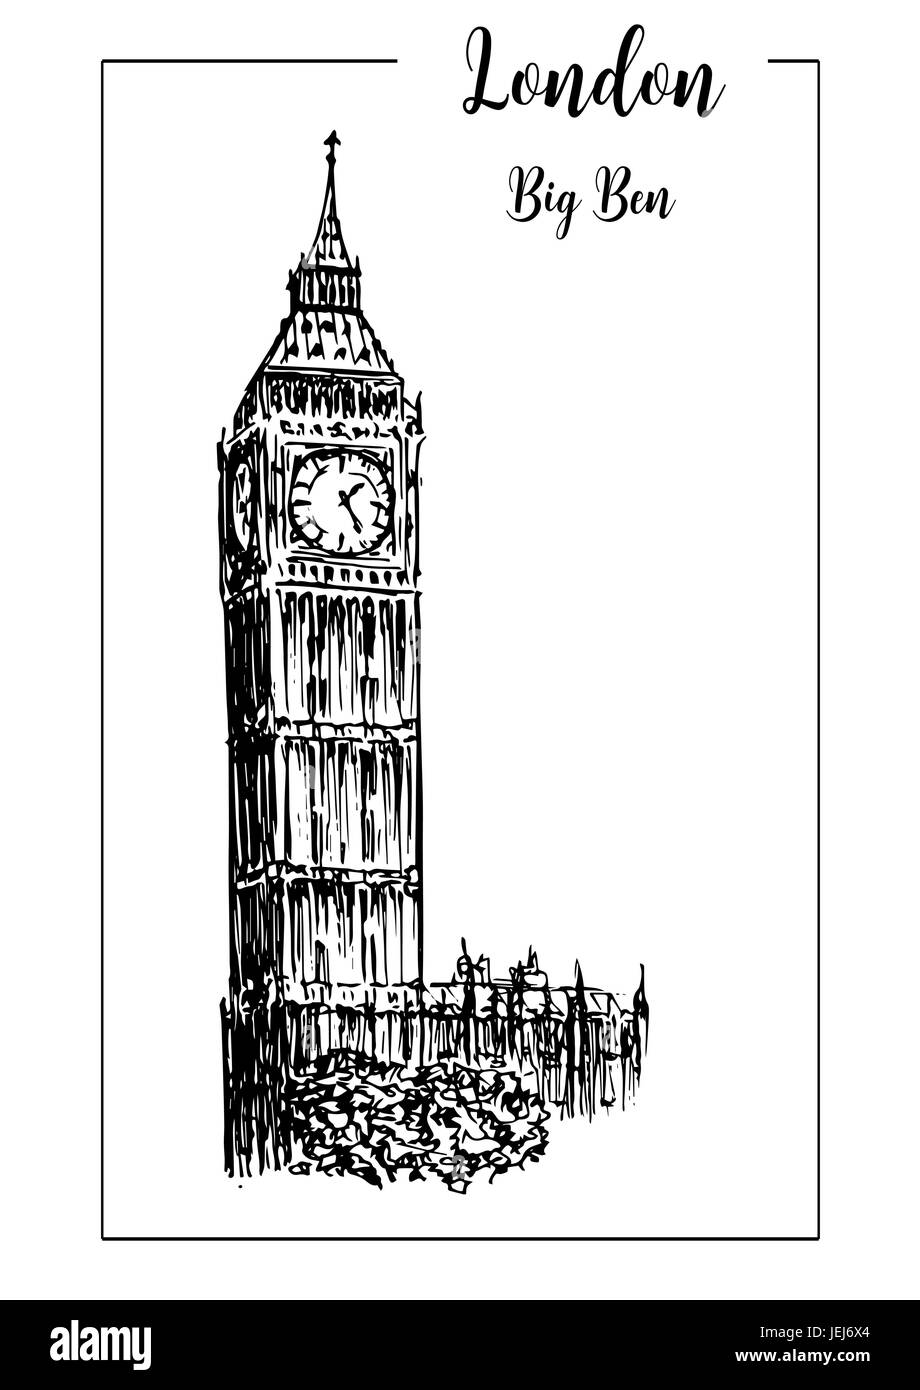 Big Ben oder Uhrturm. London-Symbol. Wunderschöne handgezeichnete Skizze Vektorgrafik. Stock Vektor